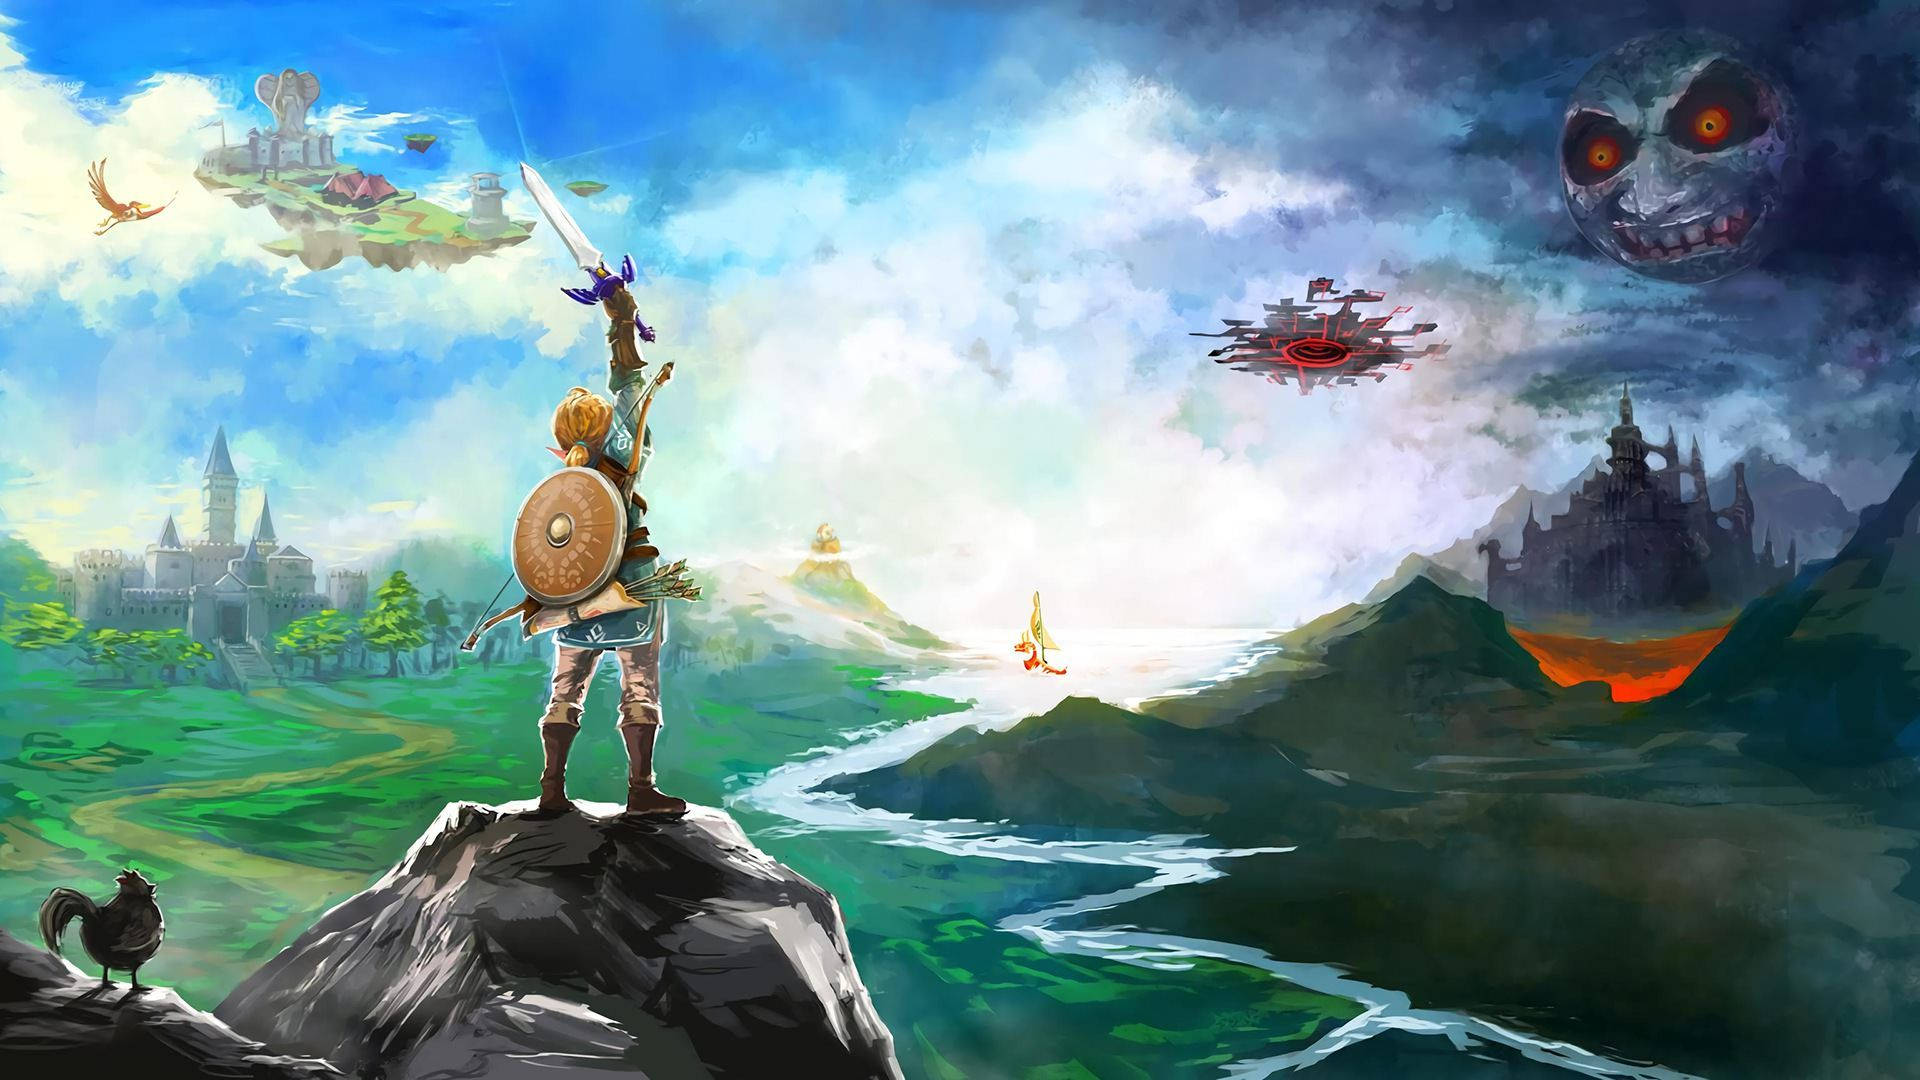 Link Exploring the Between Worlds in Legend of Zelda Wallpaper